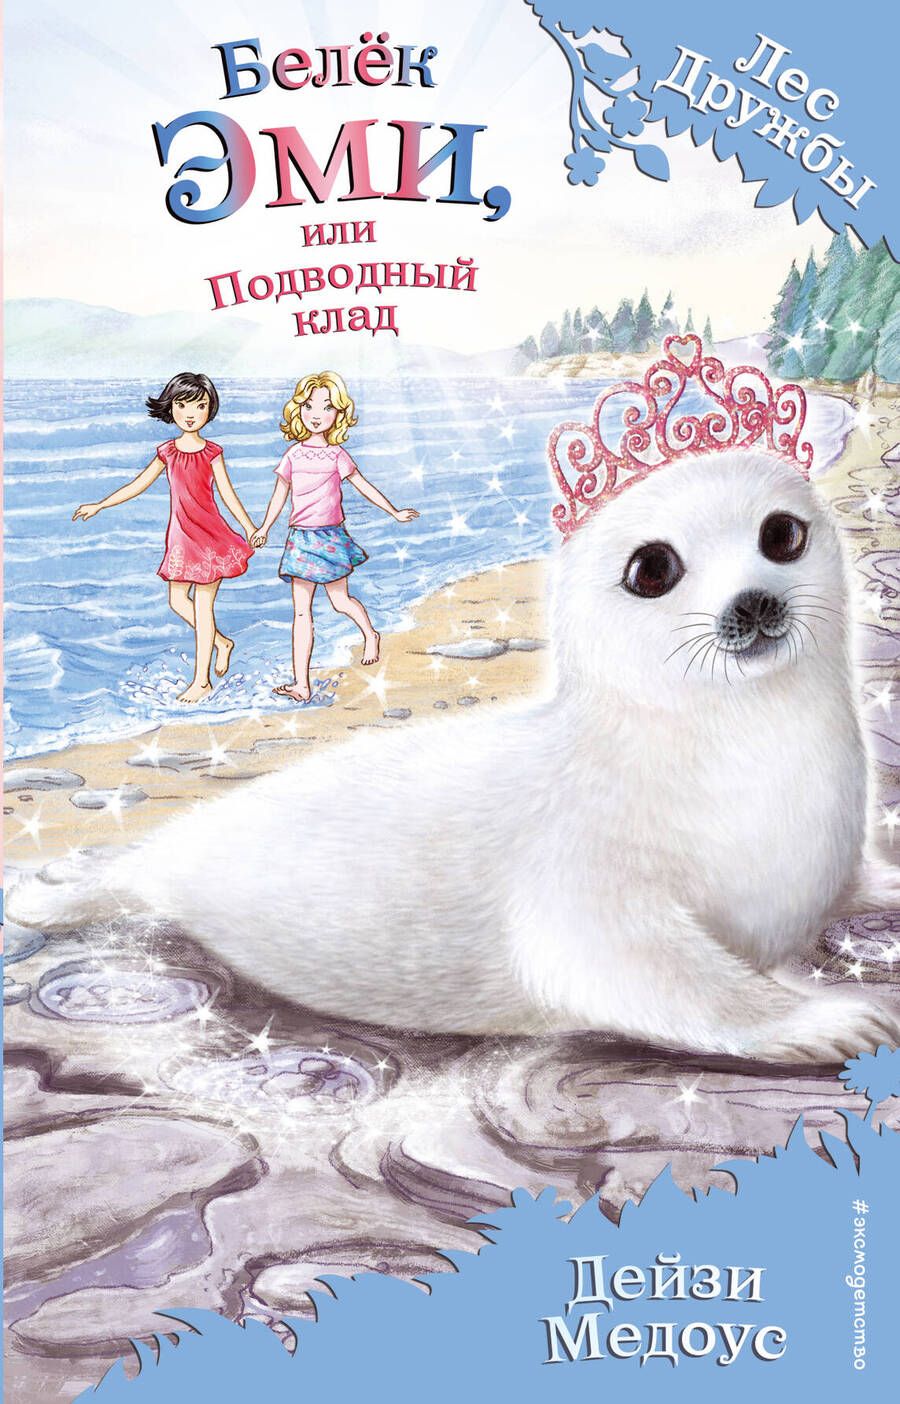 Обложка книги "Дейзи Медоус: Белёк Эми, или Подводный клад : повесть"